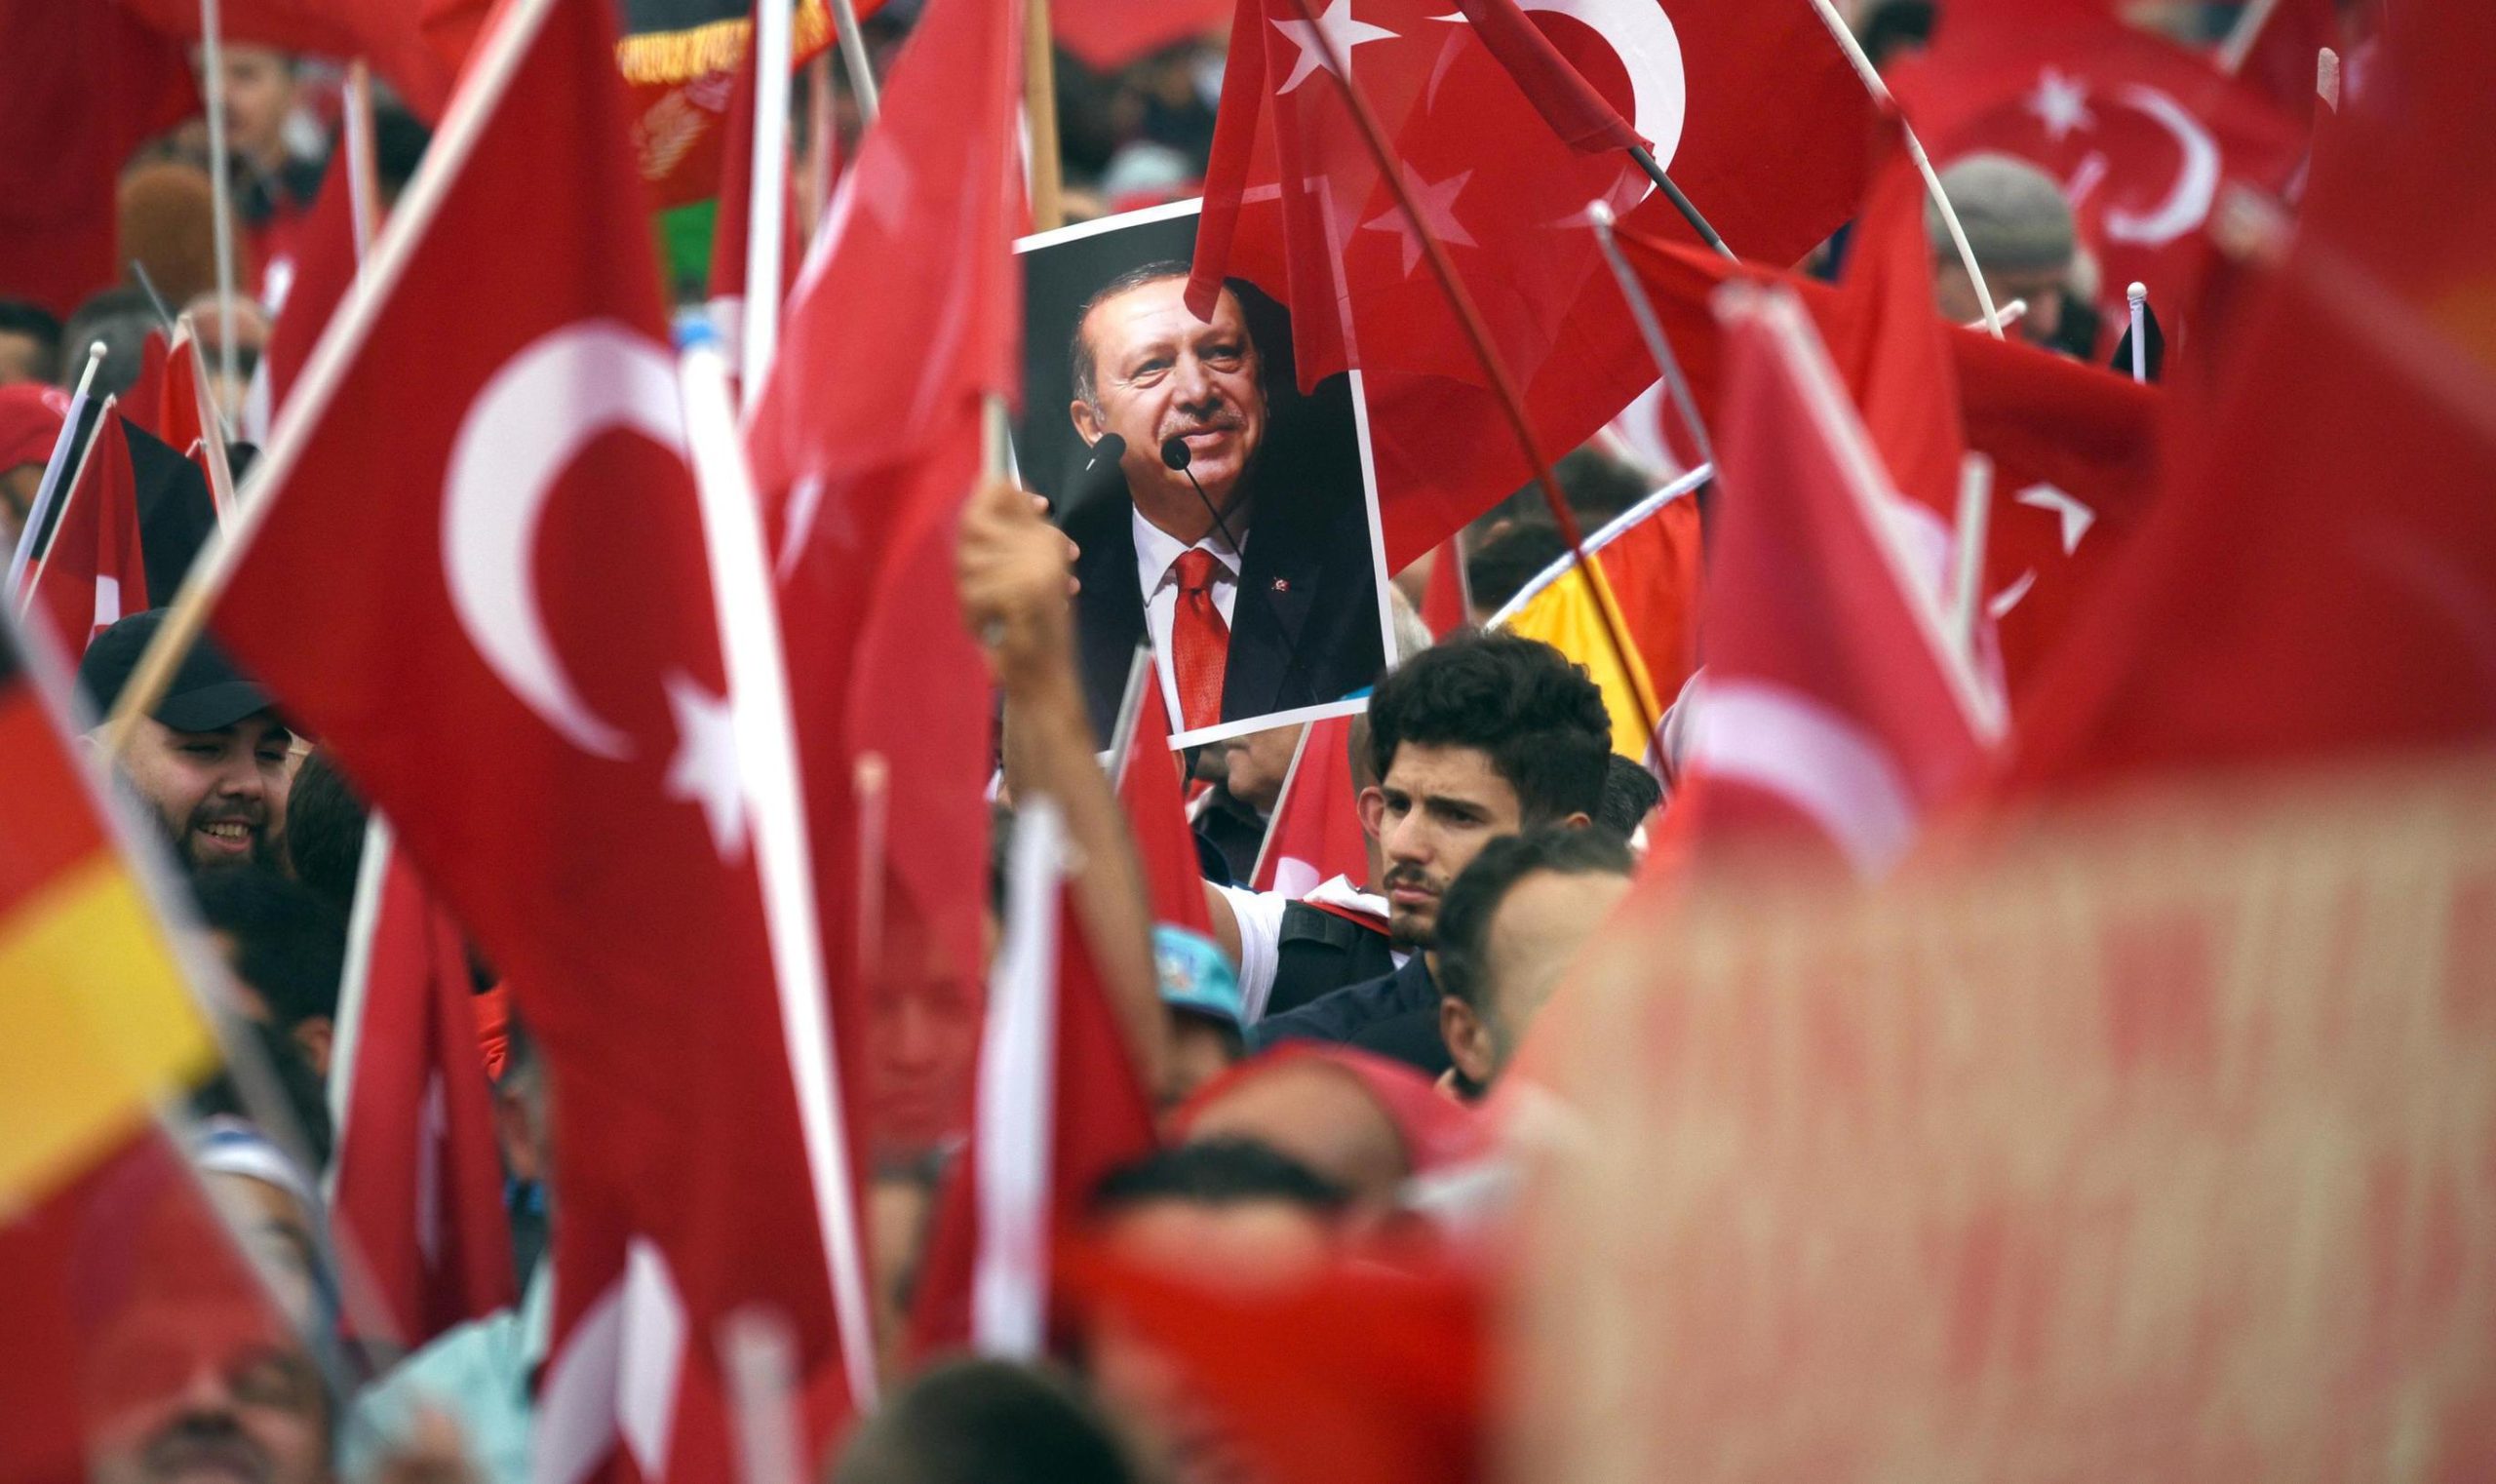 Um Erdoğan zu bekämpfen, müssen wir uns gegen die Bundesregierung stellen